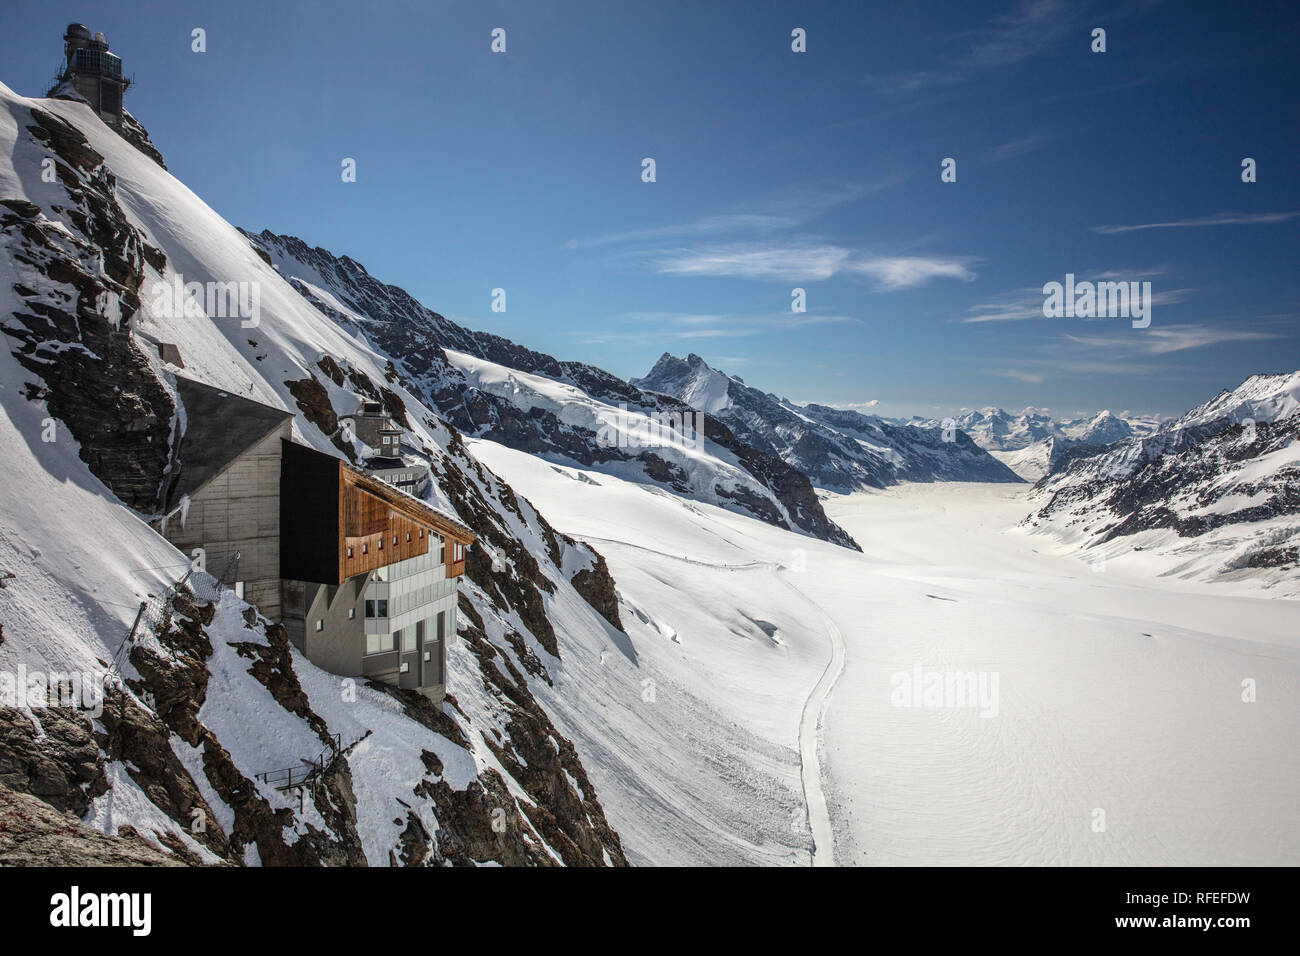 La Svizzera, Alpi Berner Oberland, Grindelwald, Jungfraujoch. Molla. Ghiacciaio di Aletsch. Jungfrau-Aletsch UNESCO - Sito Patrimonio dell'umanità. Più alto d'Europa- Foto Stock